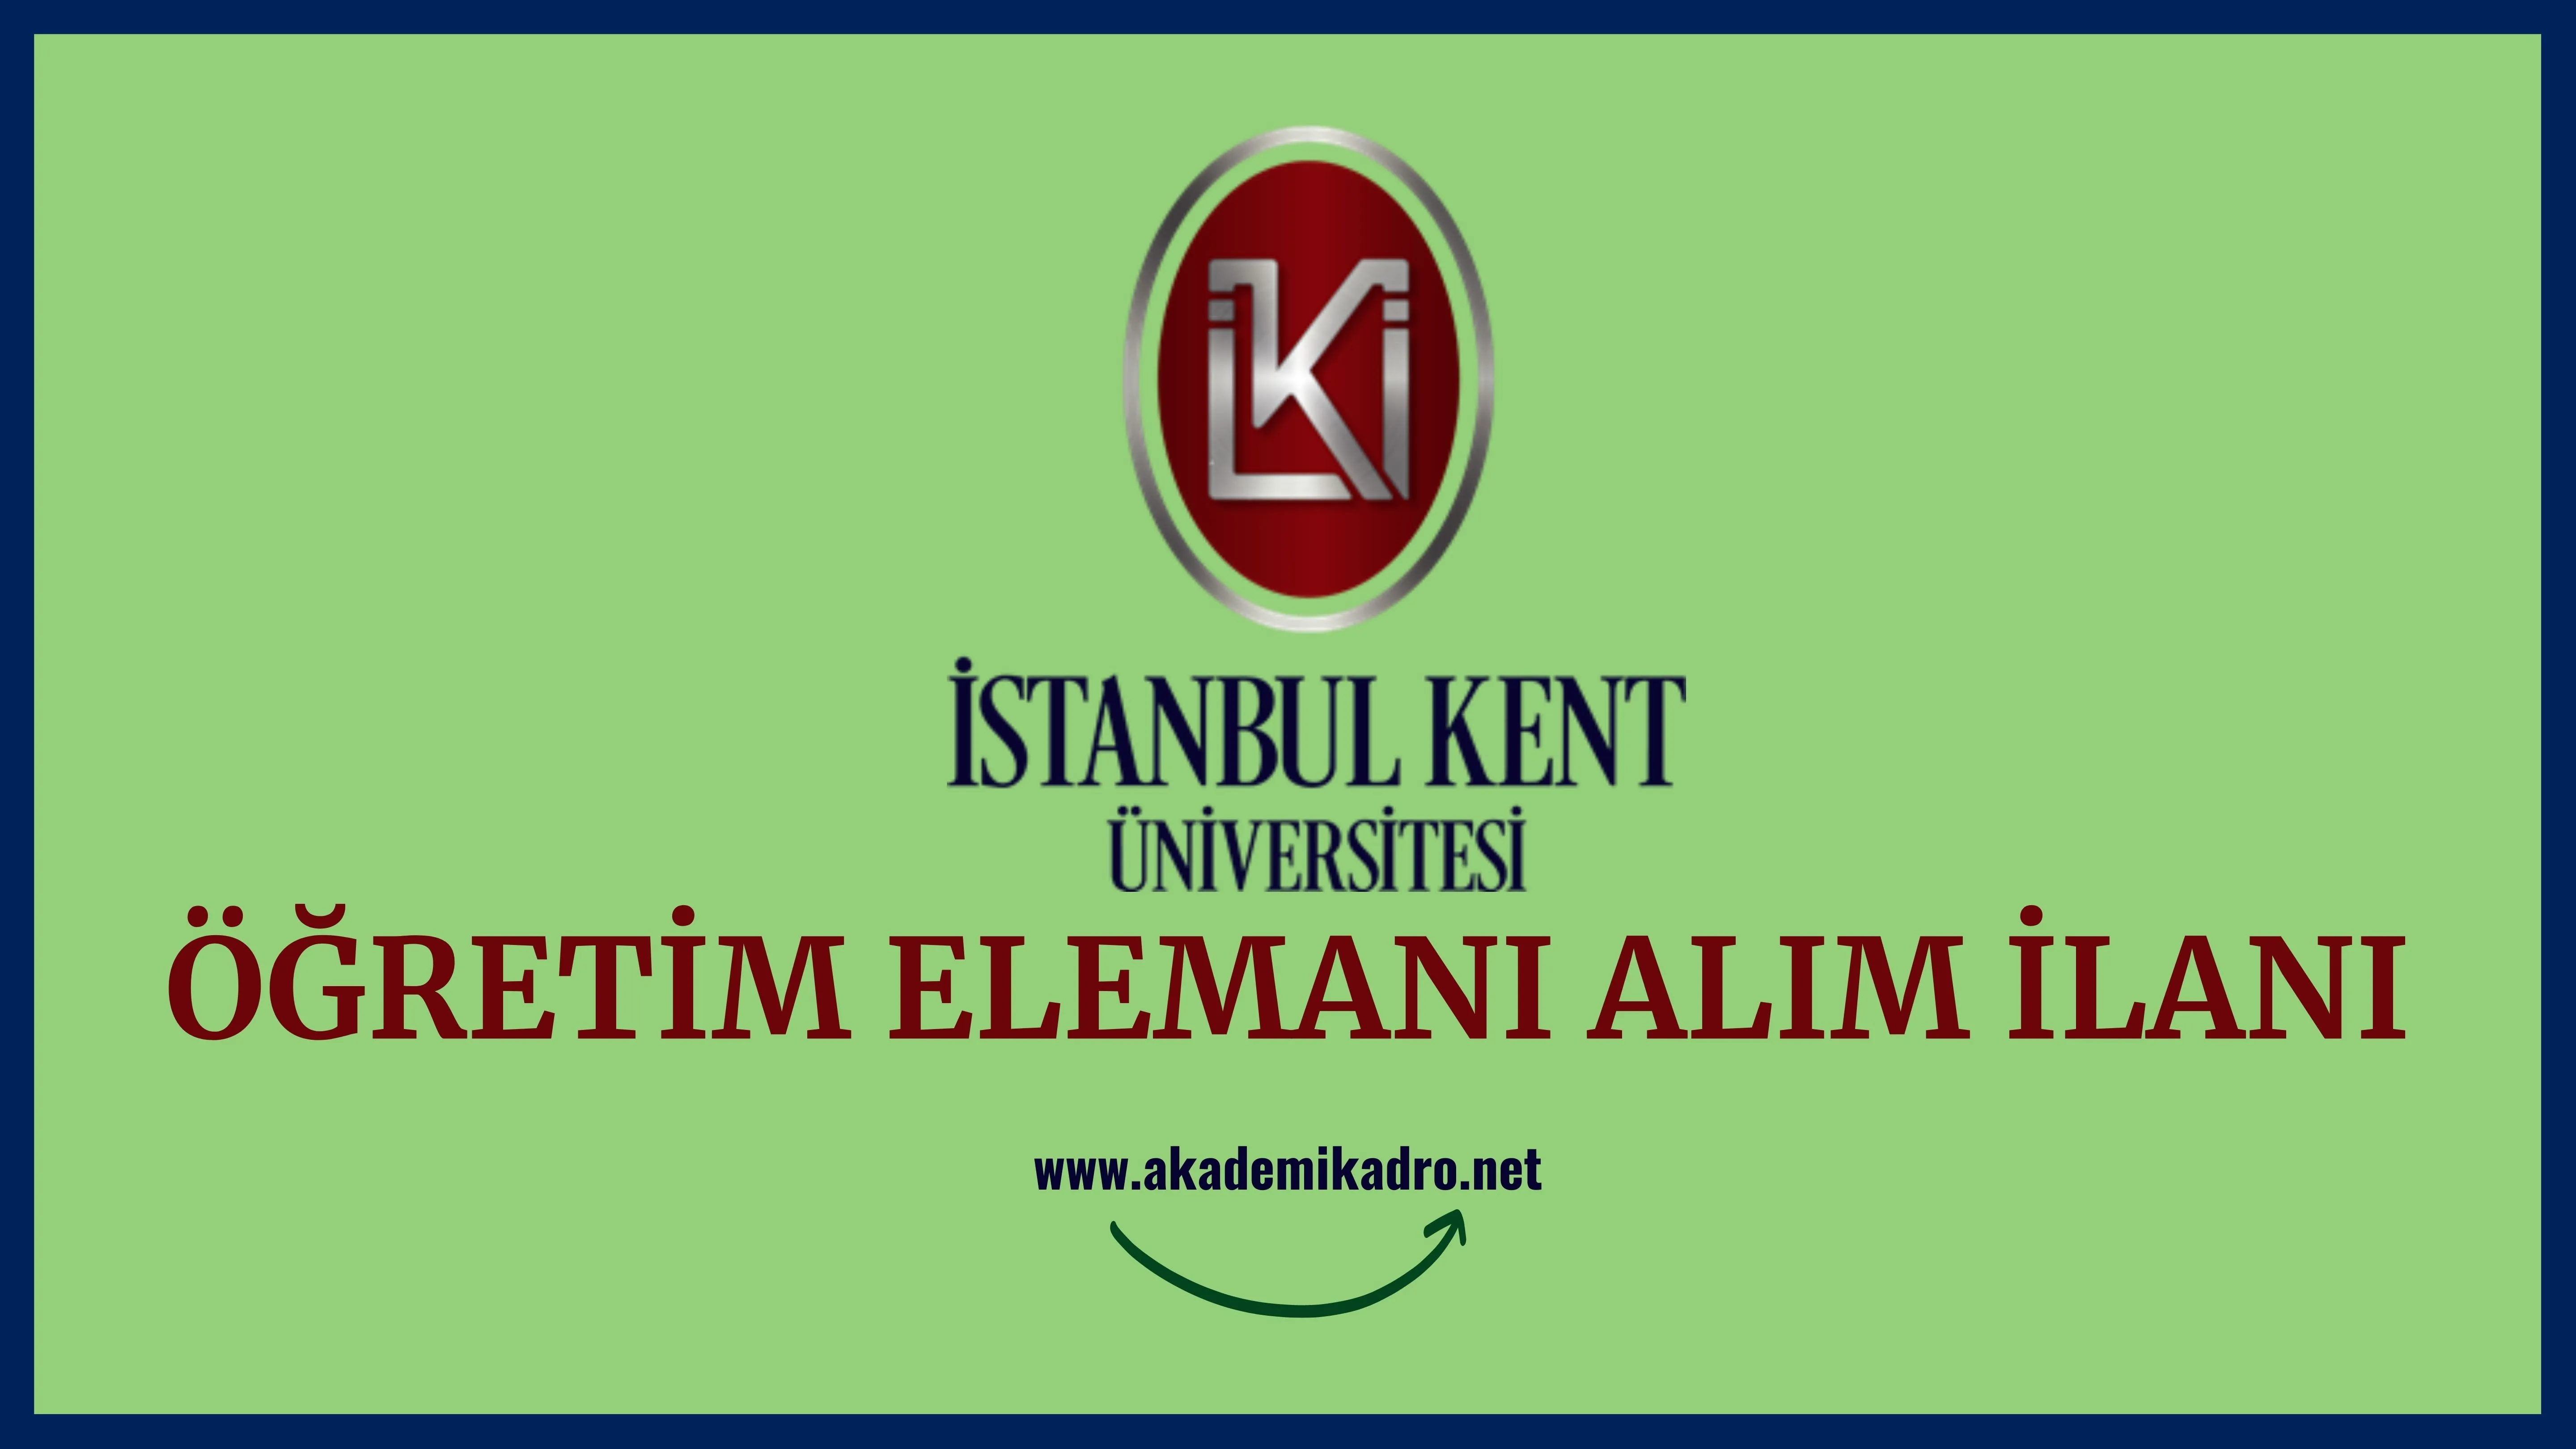 İstanbul Kent Üniversitesi 5 Araştırma görevlisi, 4 Öğretim görevlisi ve 2 Öğretim üyesi alacak.